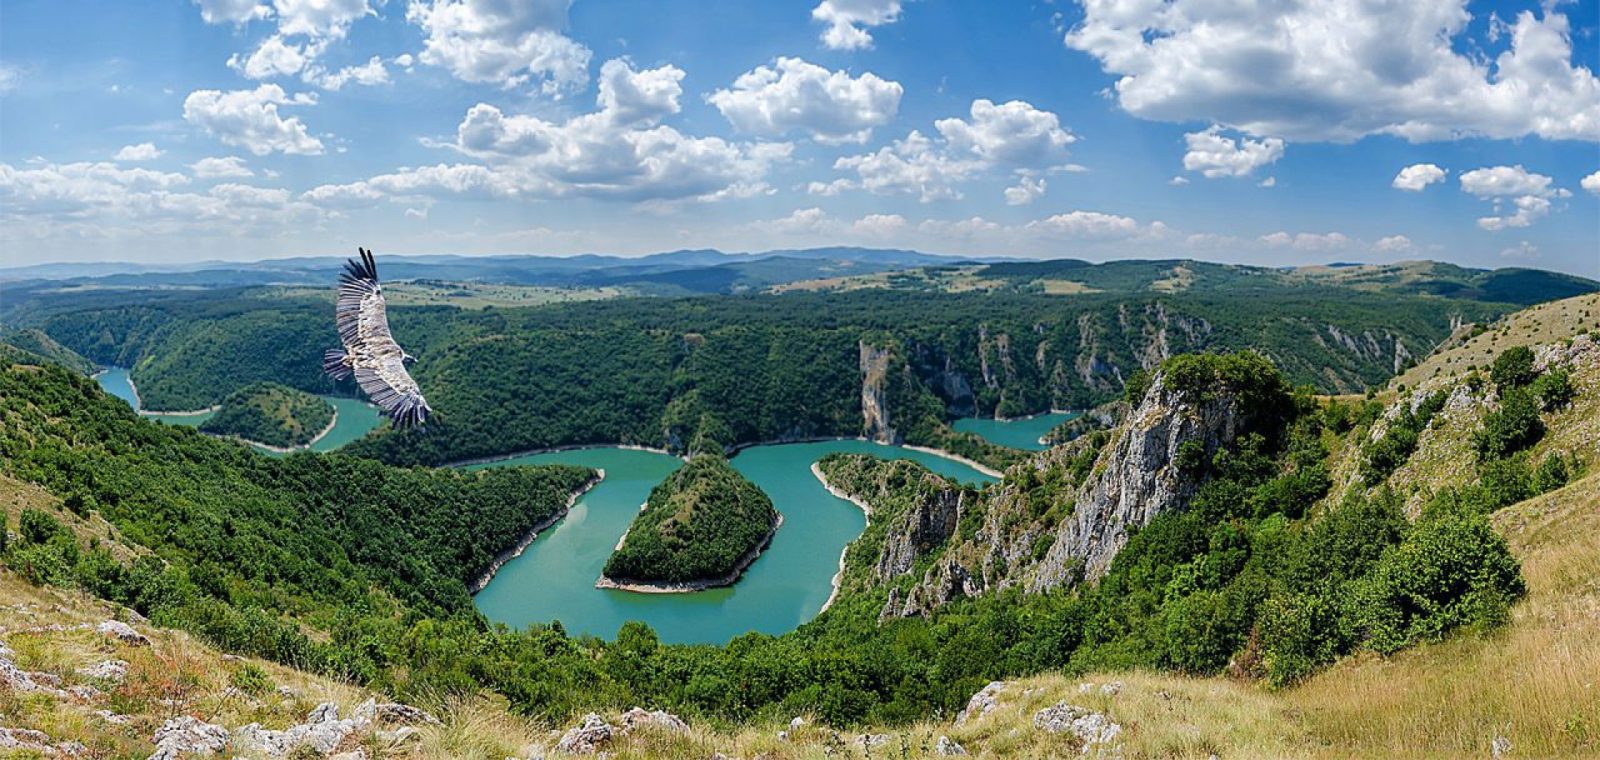 Уникальная природа Сербии. 10 дней, 5 национальных парков